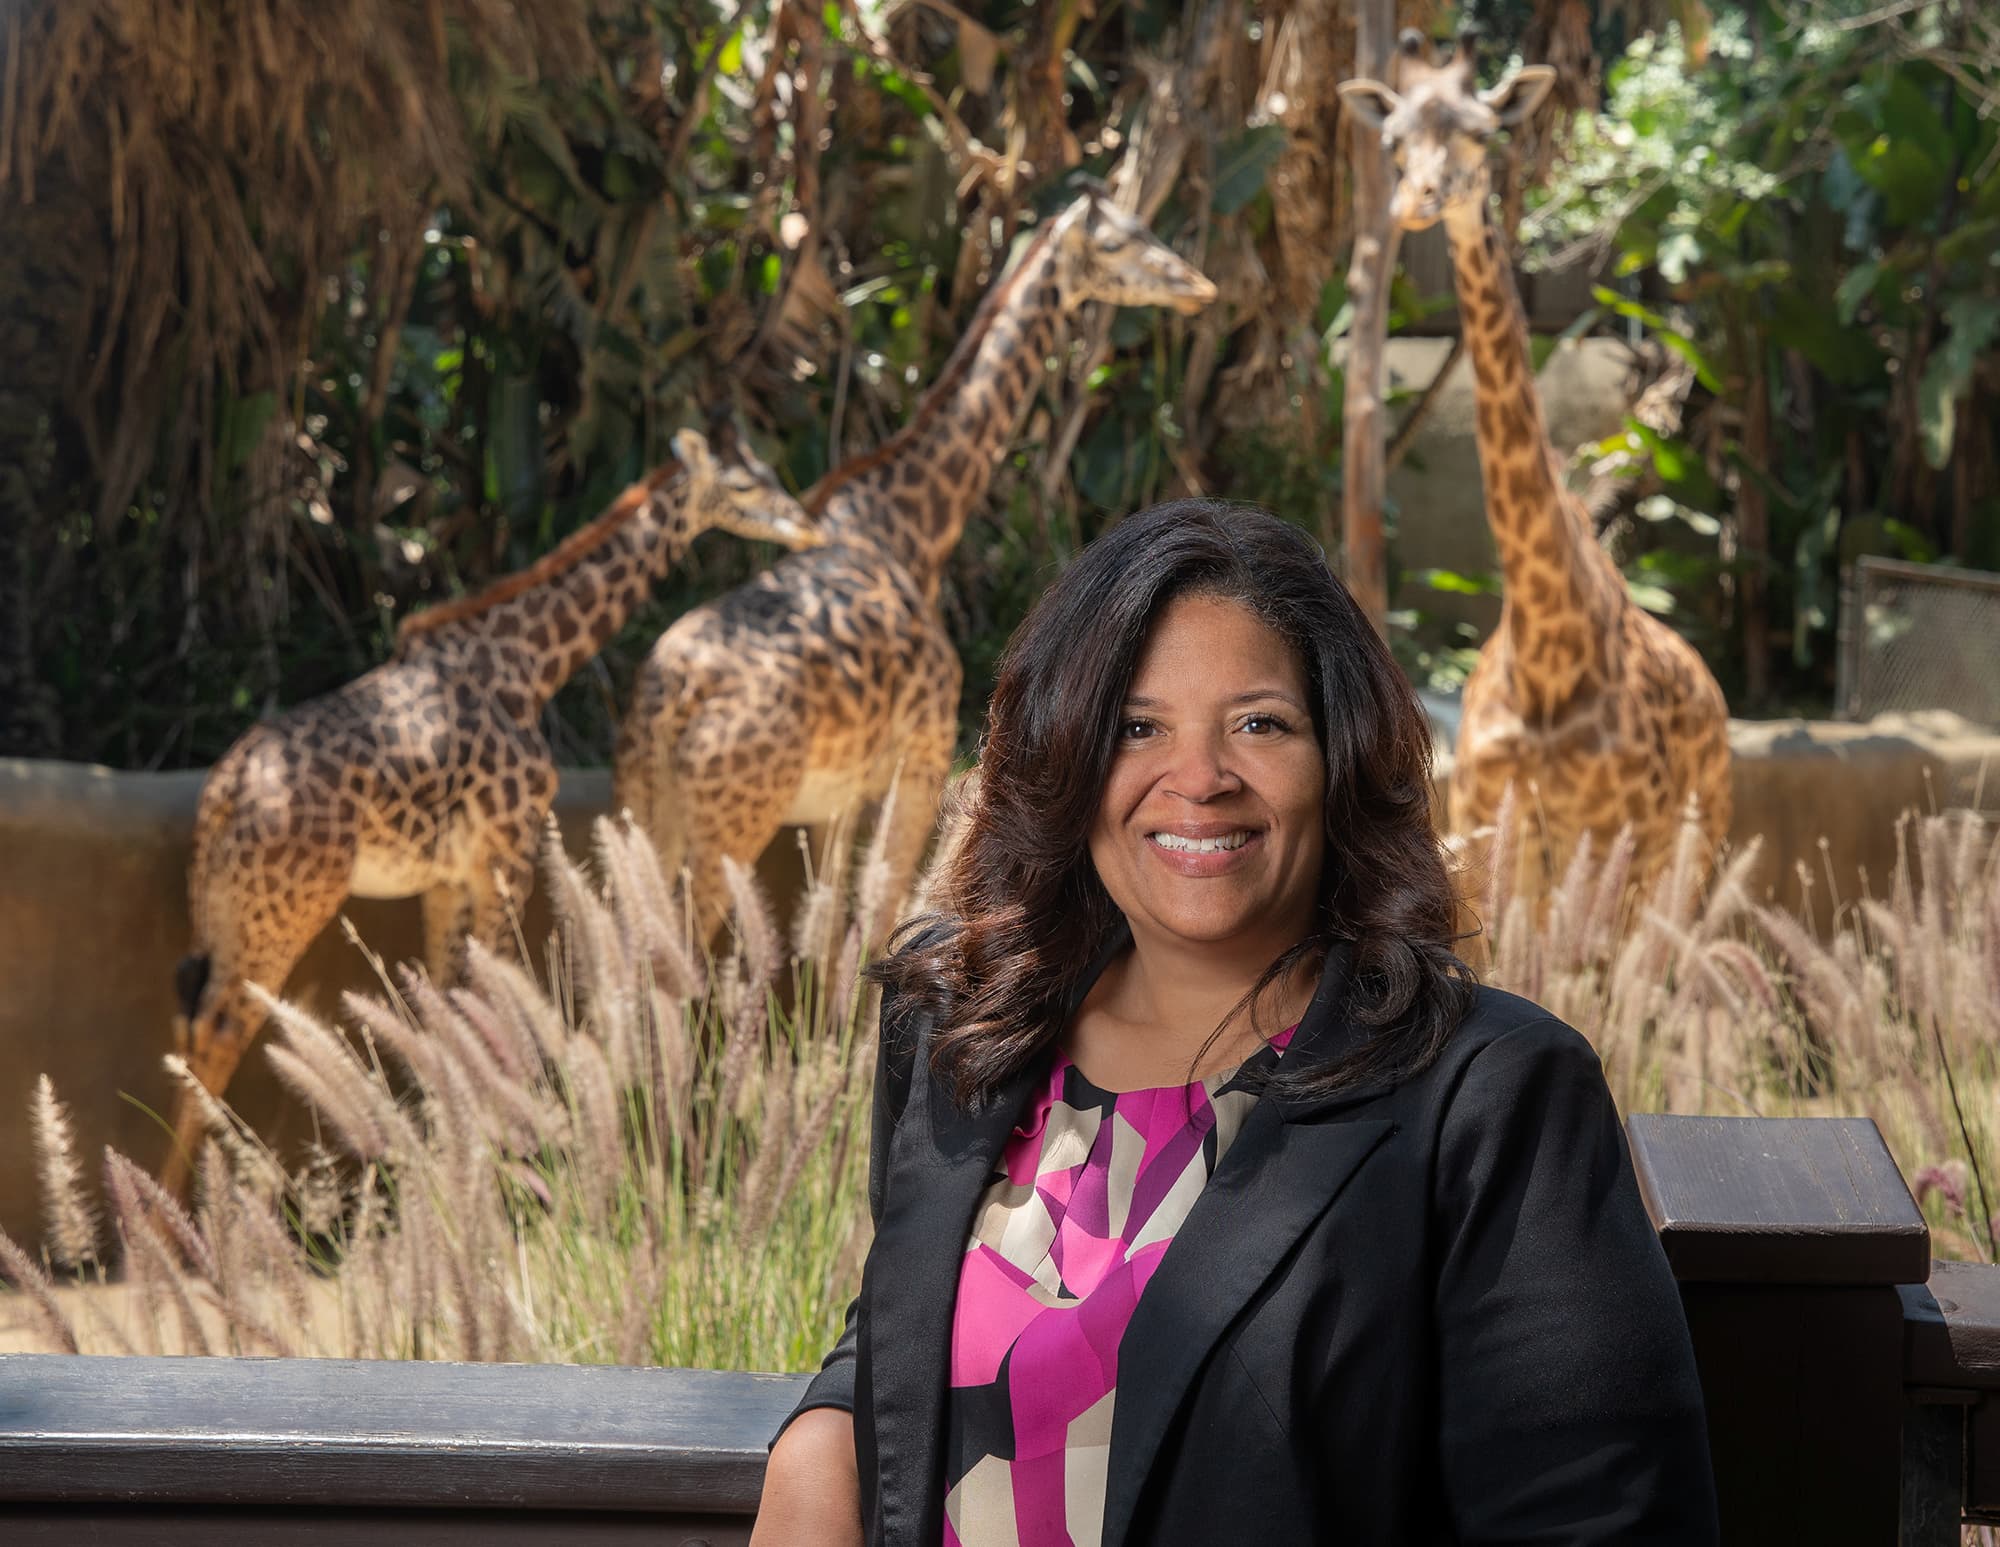 Denise Verret posing with the giraffes